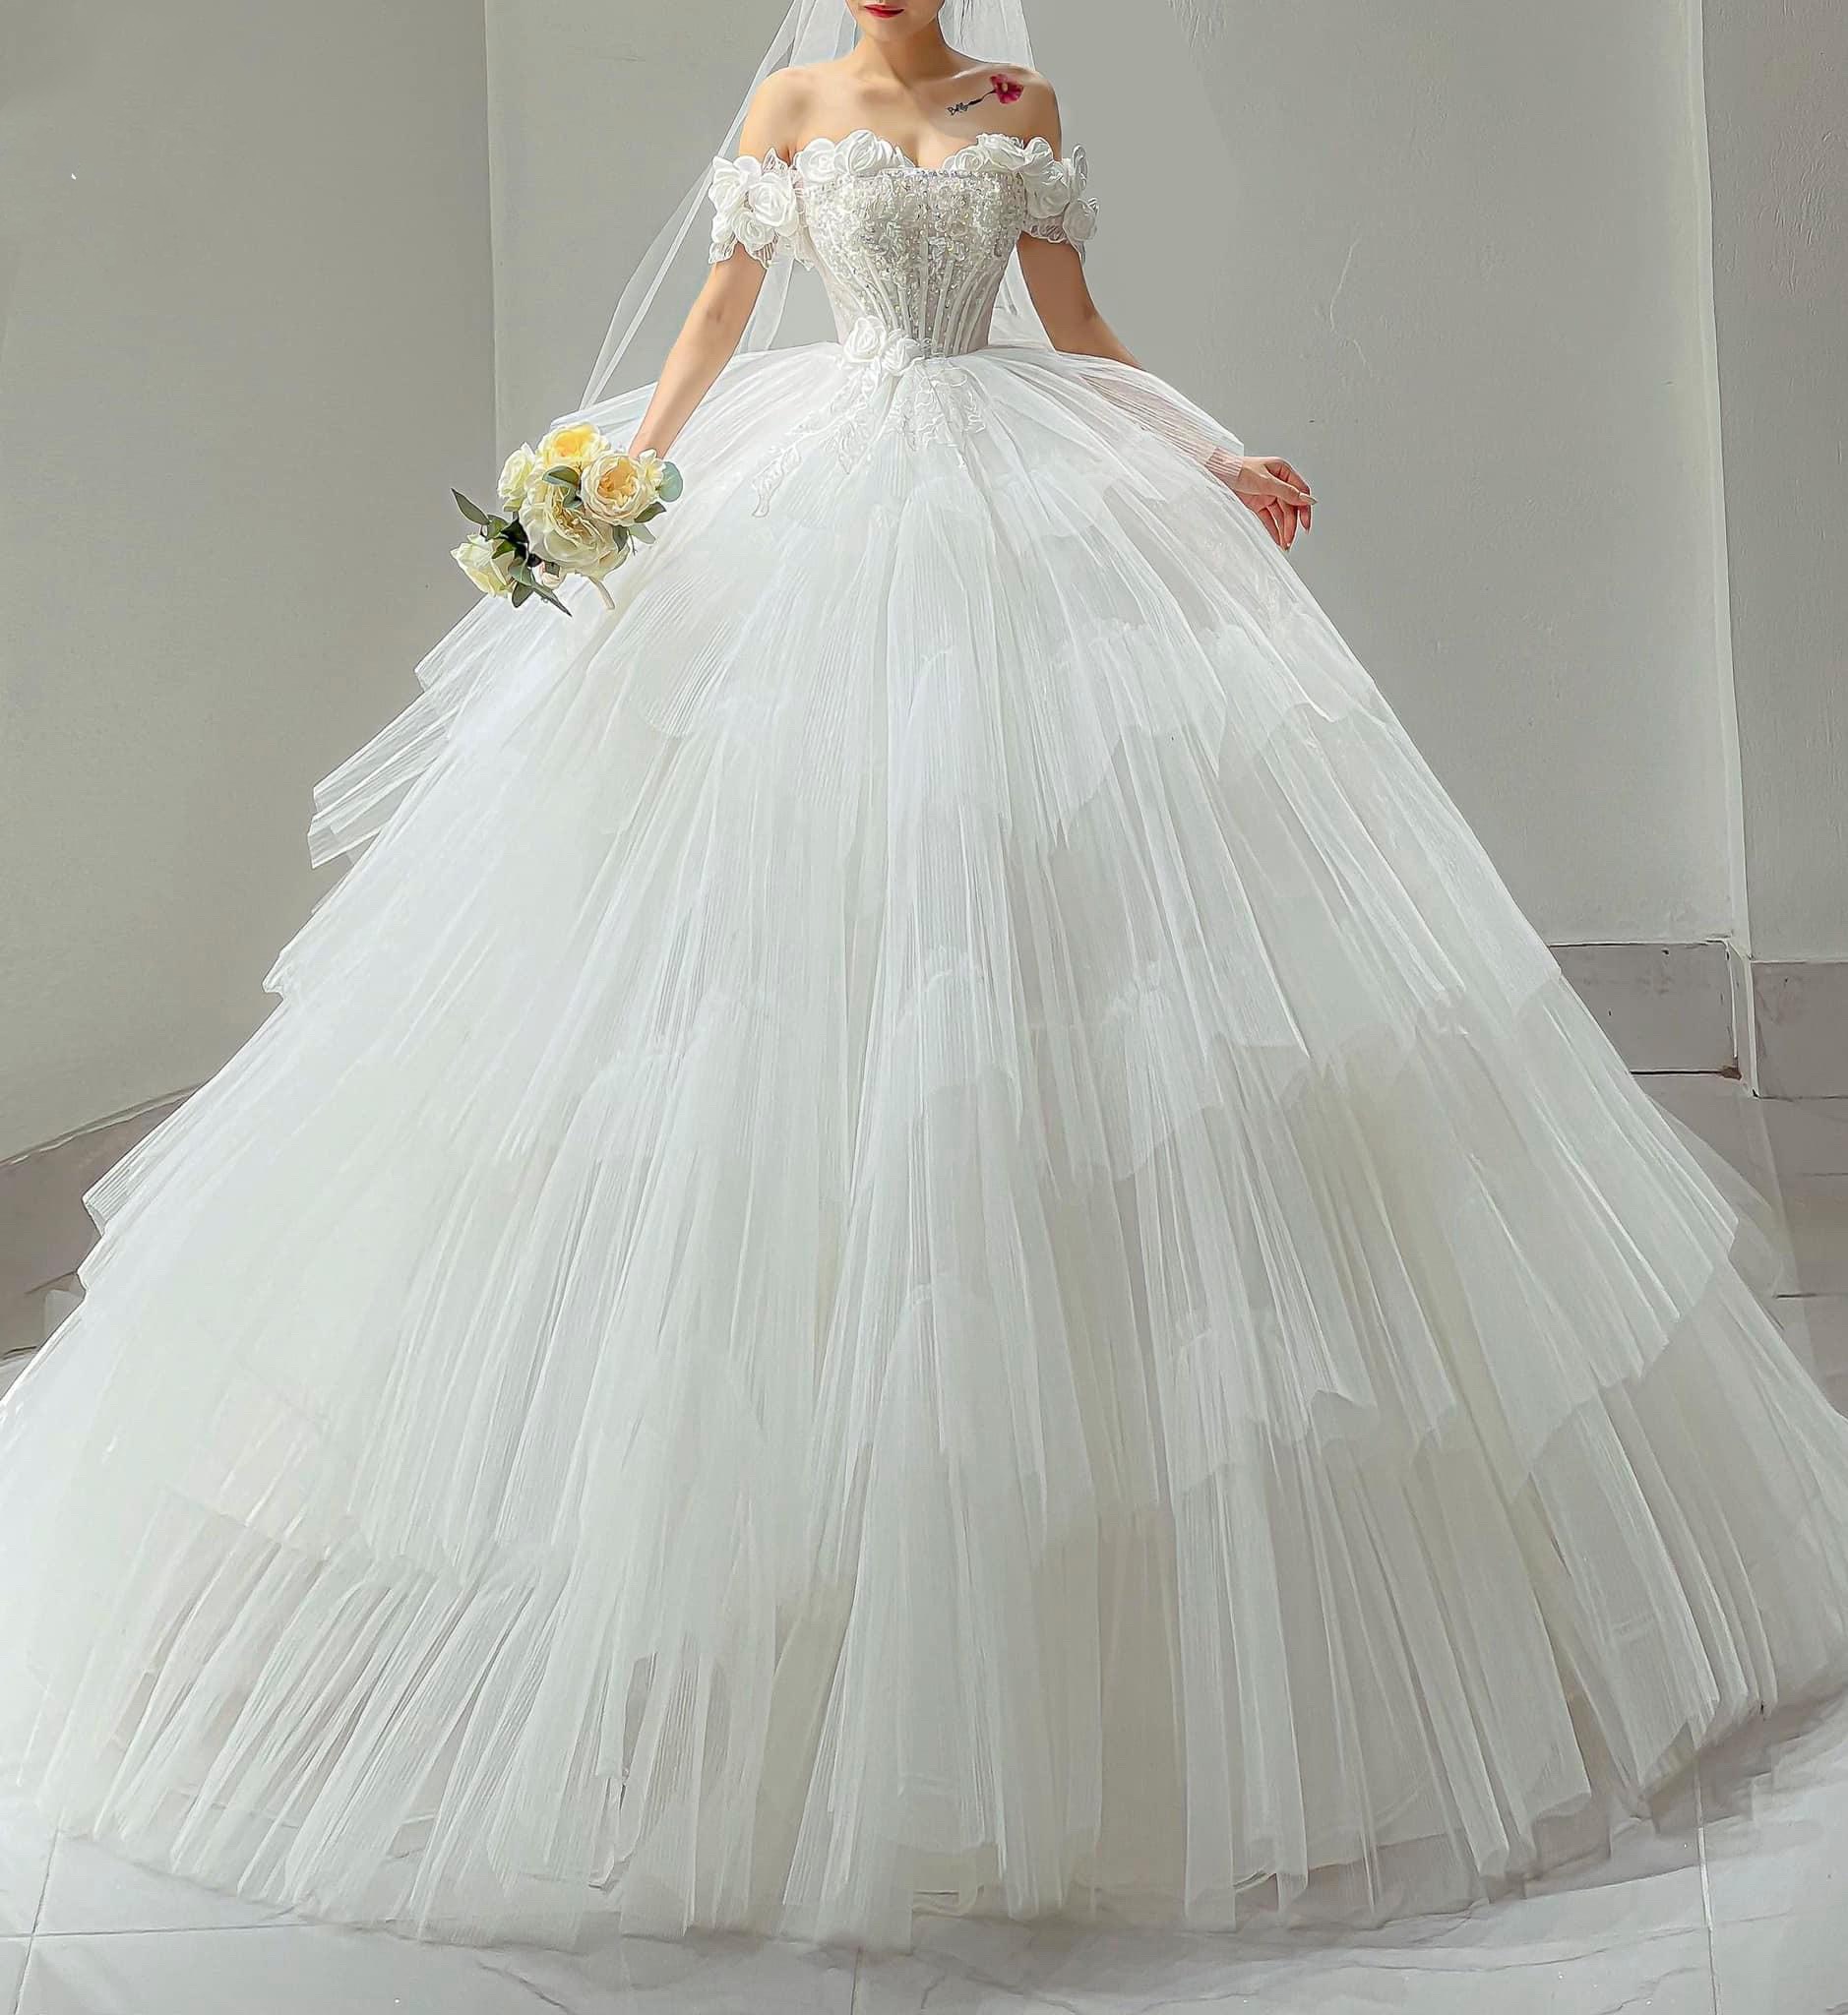 Váy cưới công chúa với chất liệu voan nhẹ nhàng, đơn giản #1105